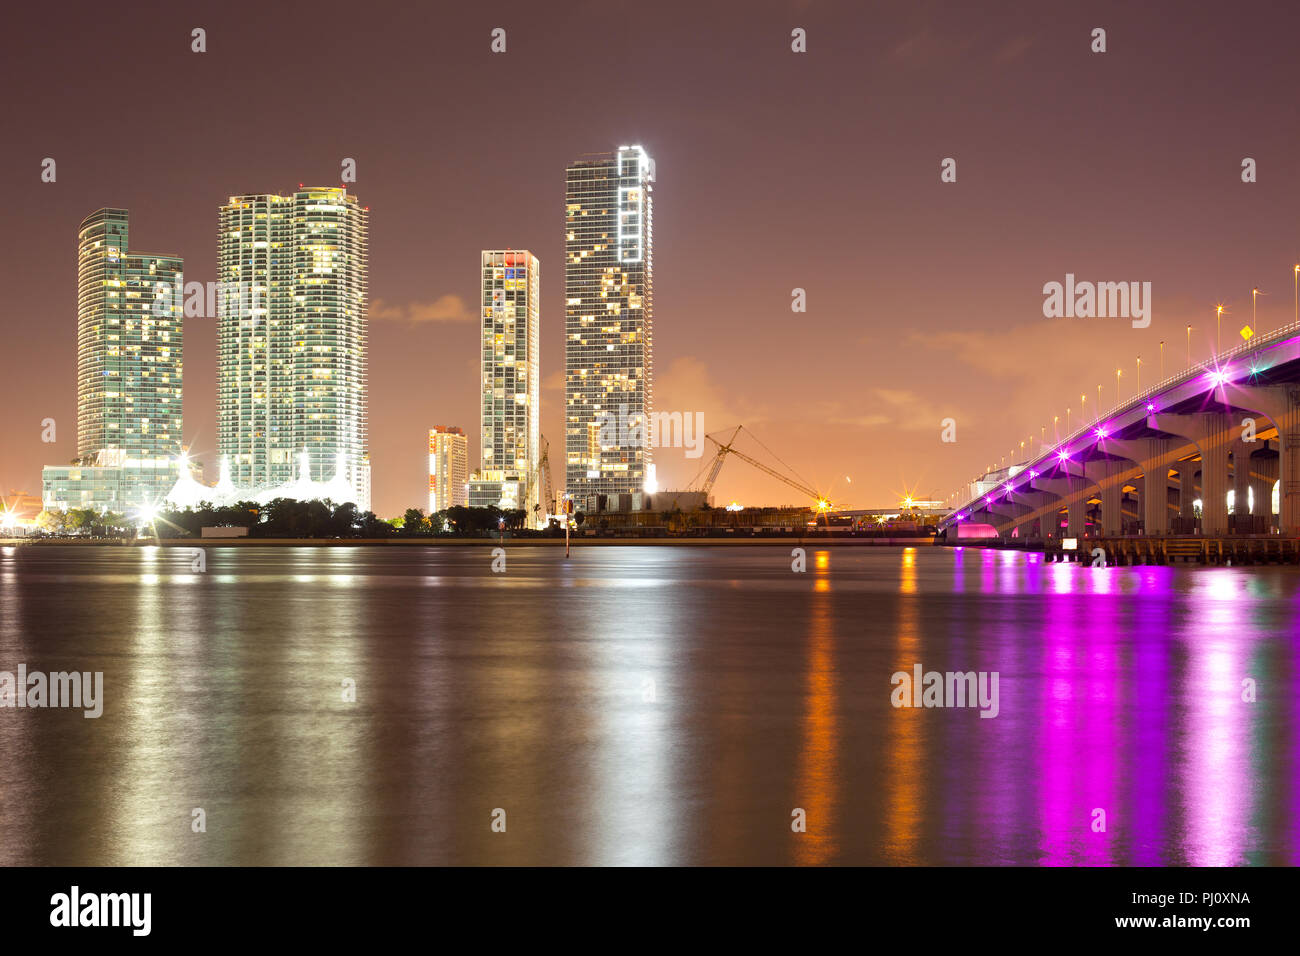 L'évolution de l'immobilier au centre-ville de Miami, Floride, USA Banque D'Images